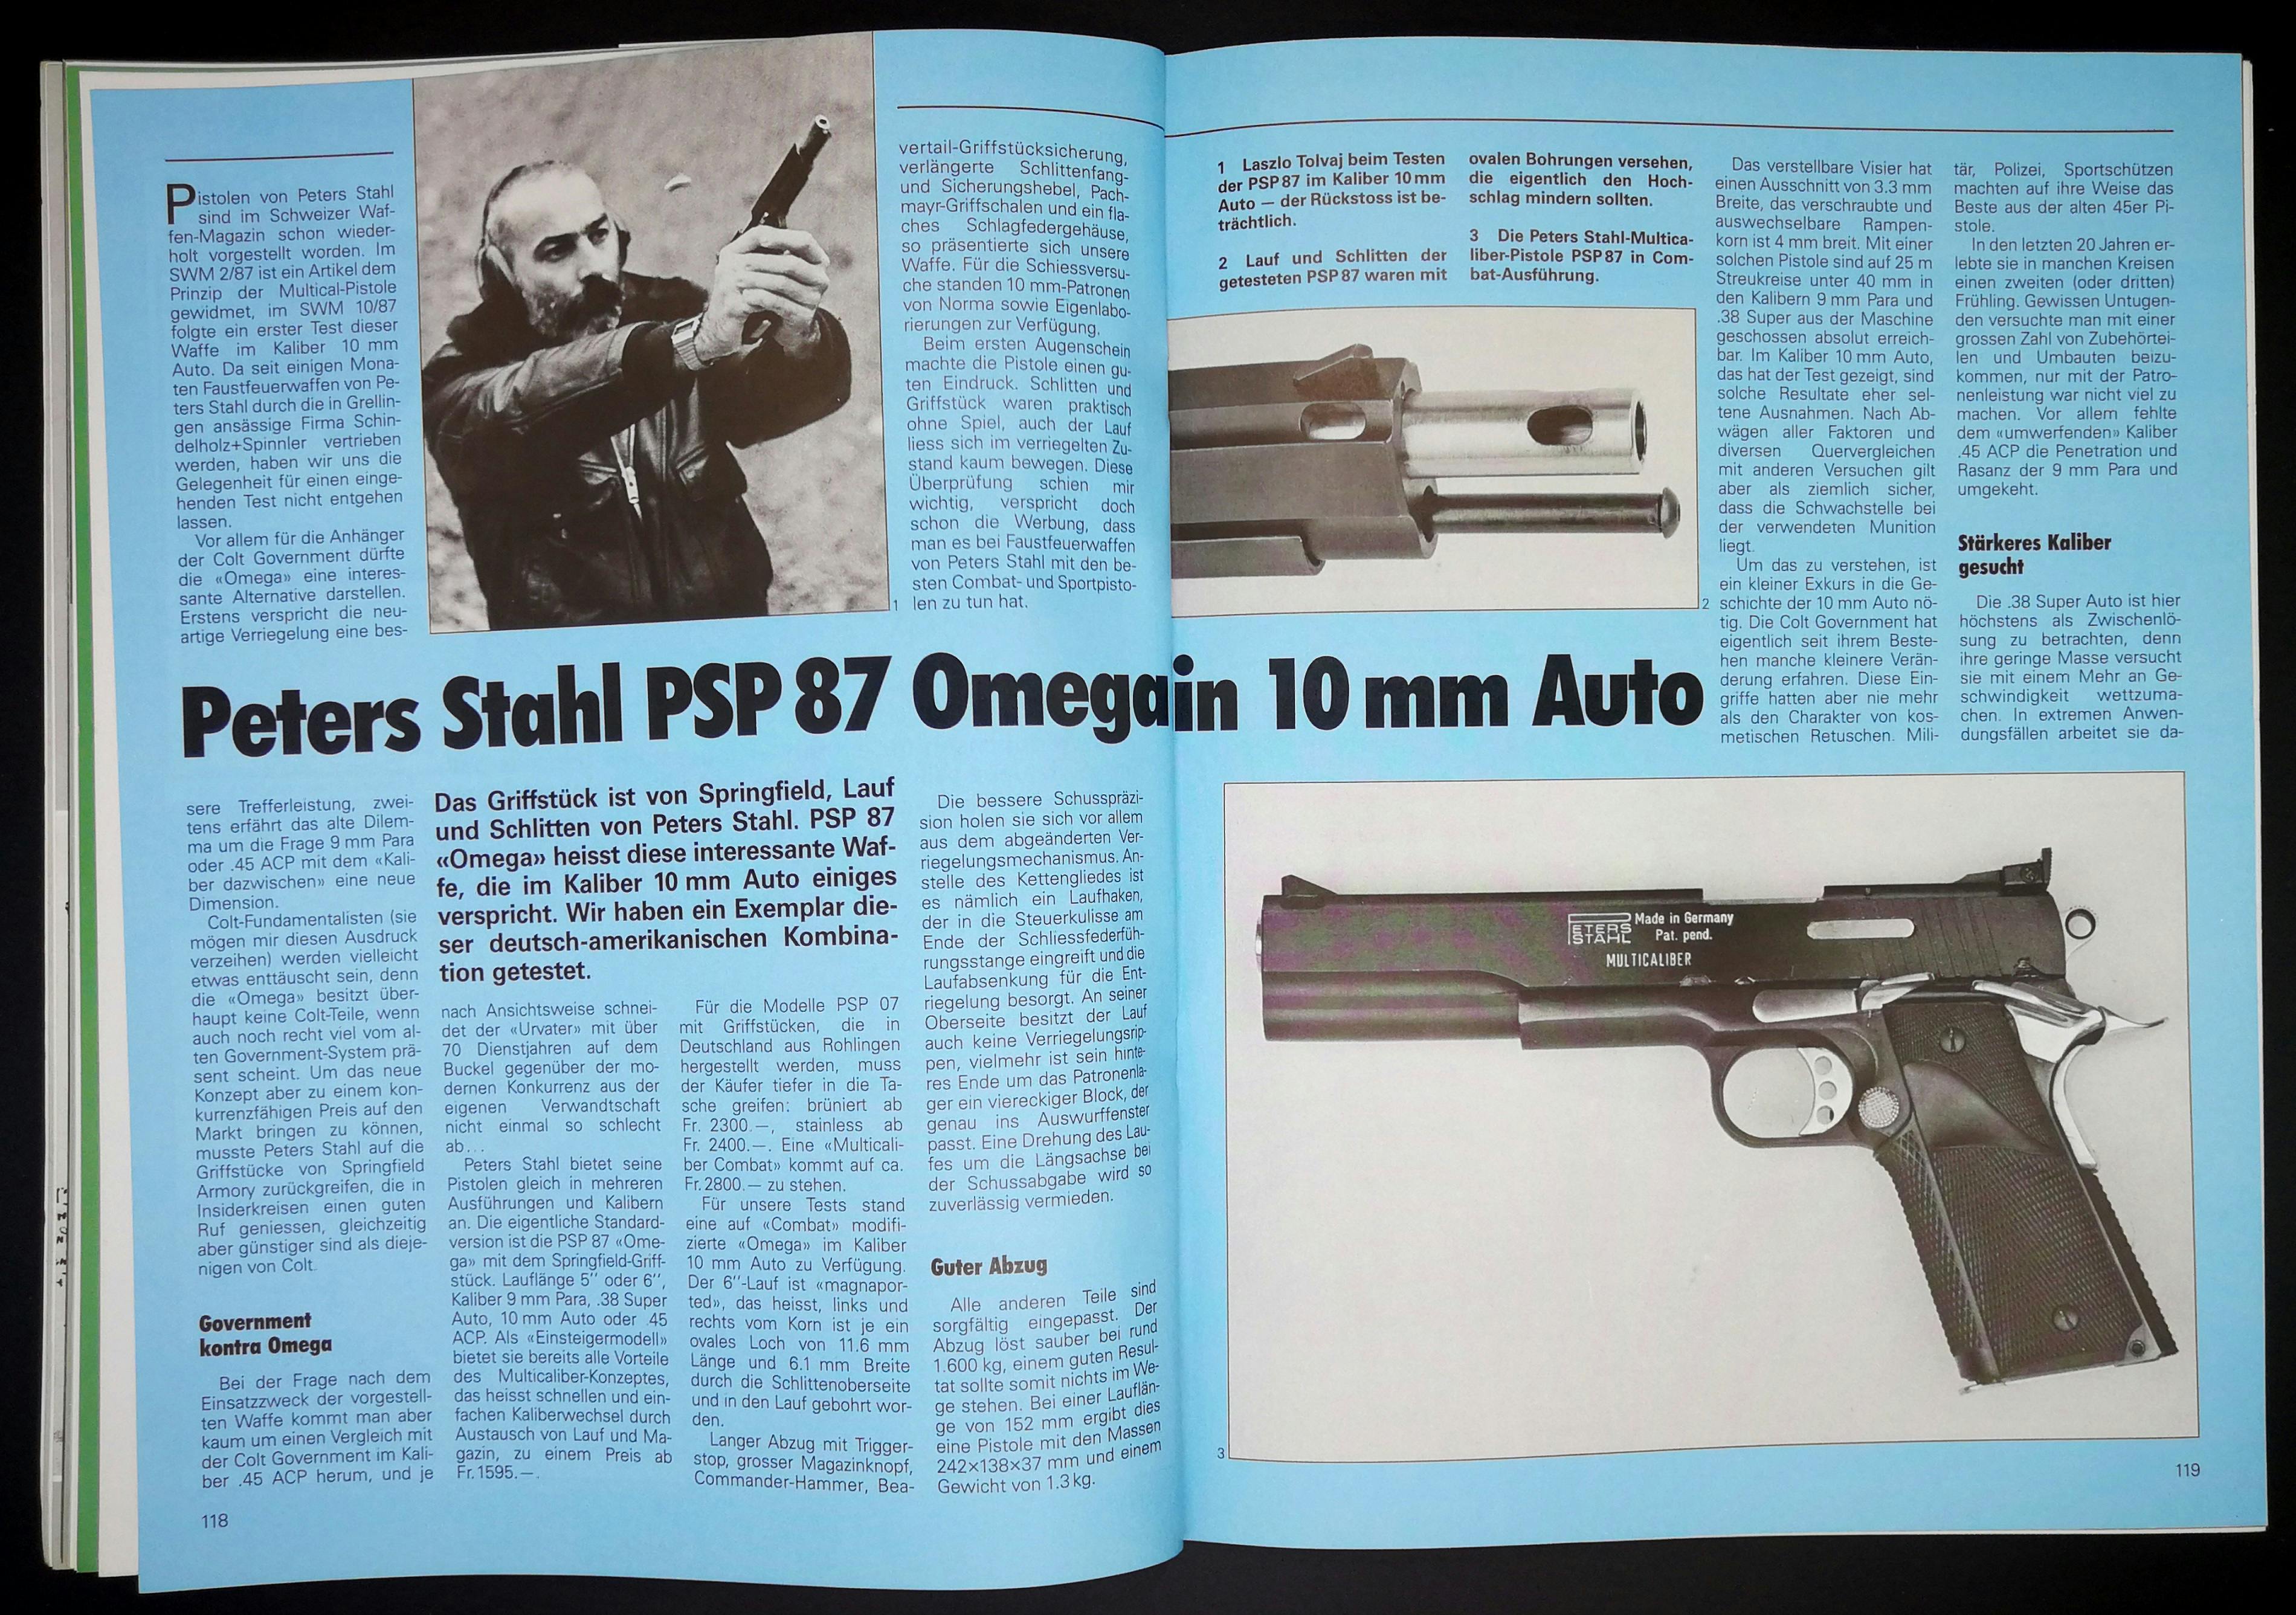 Die 10mm-Frage beschäftigte wohl die Welt in den späten 80ern. Hier die Peters Stahl PSP 87, die trotz frappanten Ähnlichkeiten zu Colt 1911ern keien Colt-Teile verbaut hat.